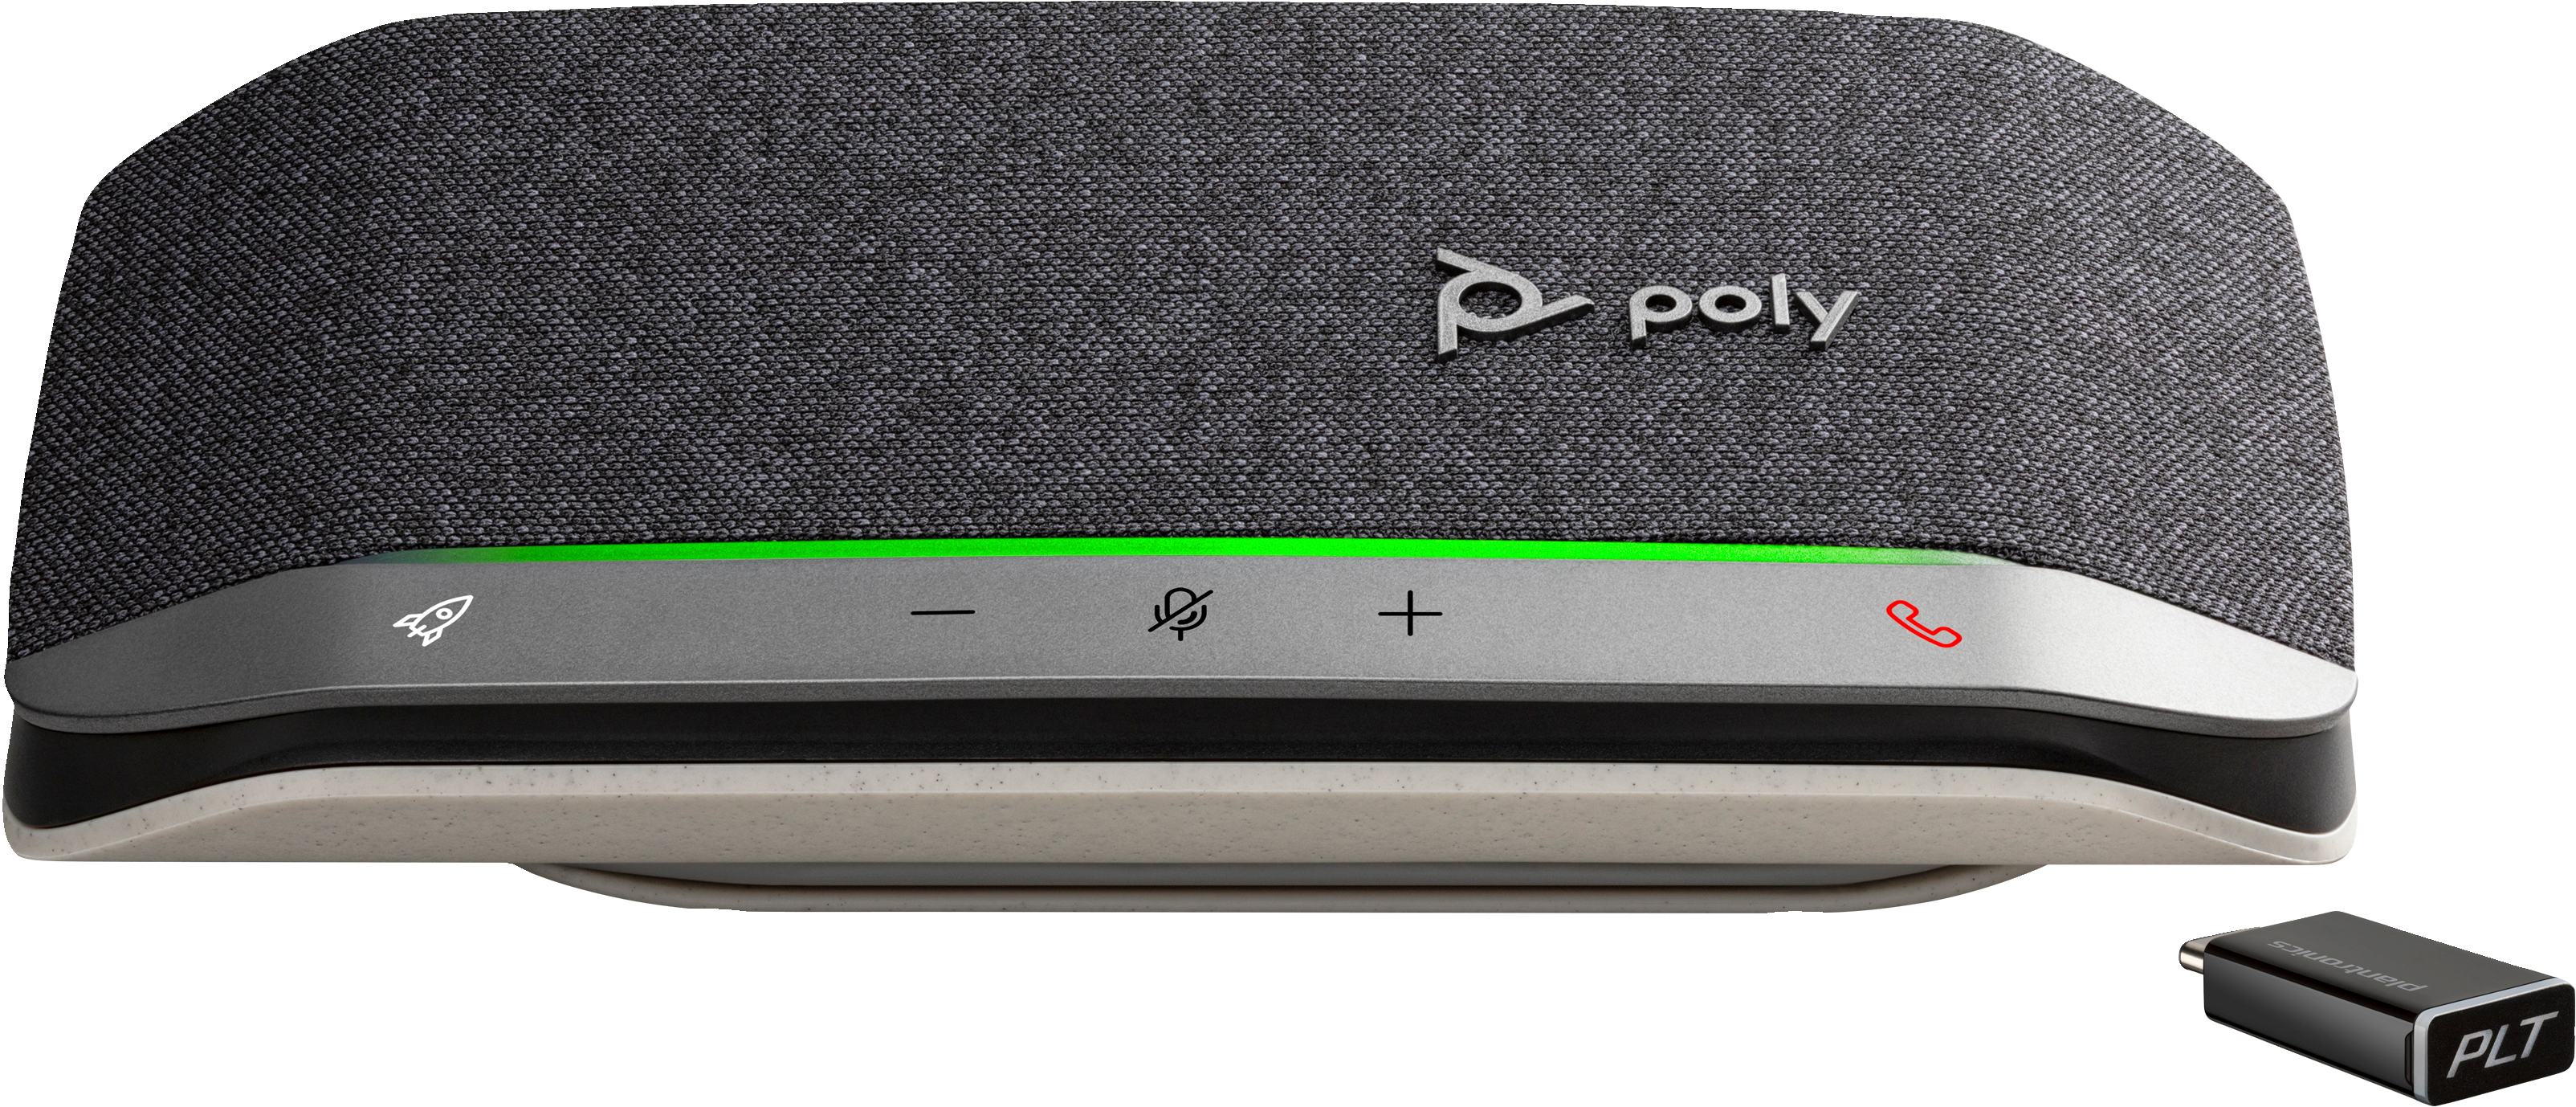 Cпікерфон Poly Sync 20+ з адаптером BT700, сертифікат Microsoft Teams, USB-C, Bluetooth, сірийфото4